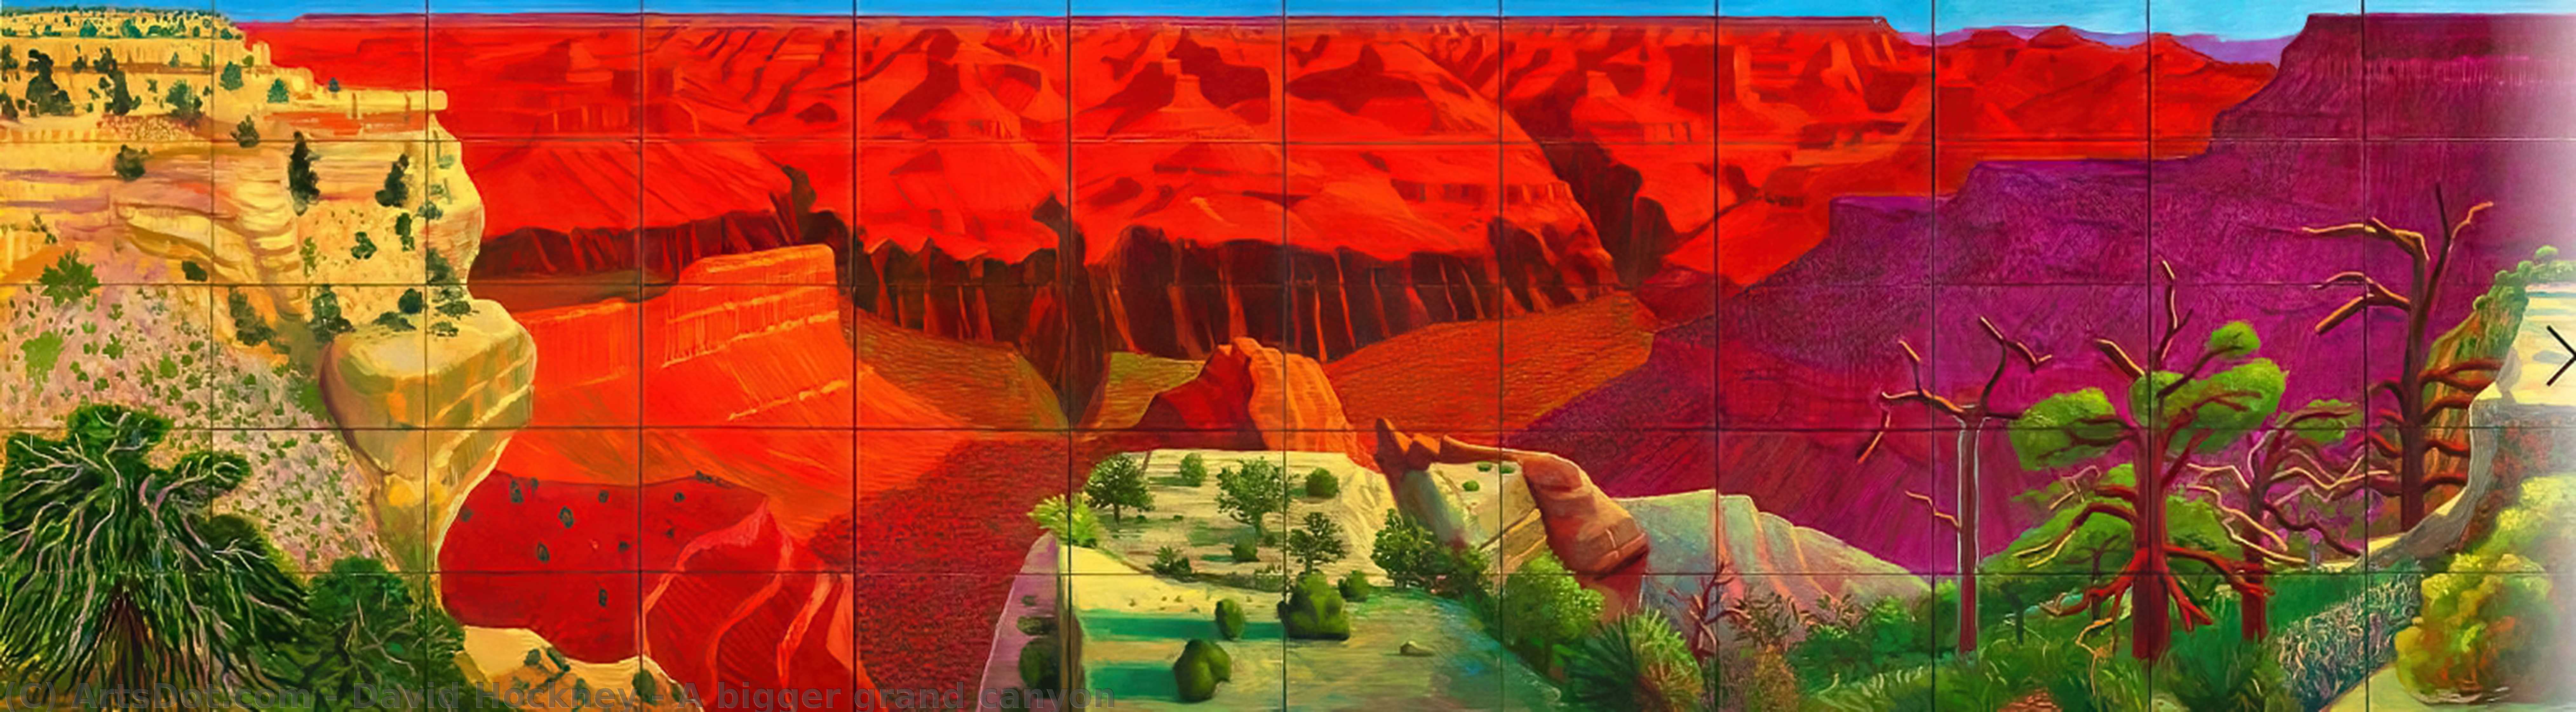 Wikoo.org - موسوعة الفنون الجميلة - اللوحة، العمل الفني David Hockney - A bigger grand canyon